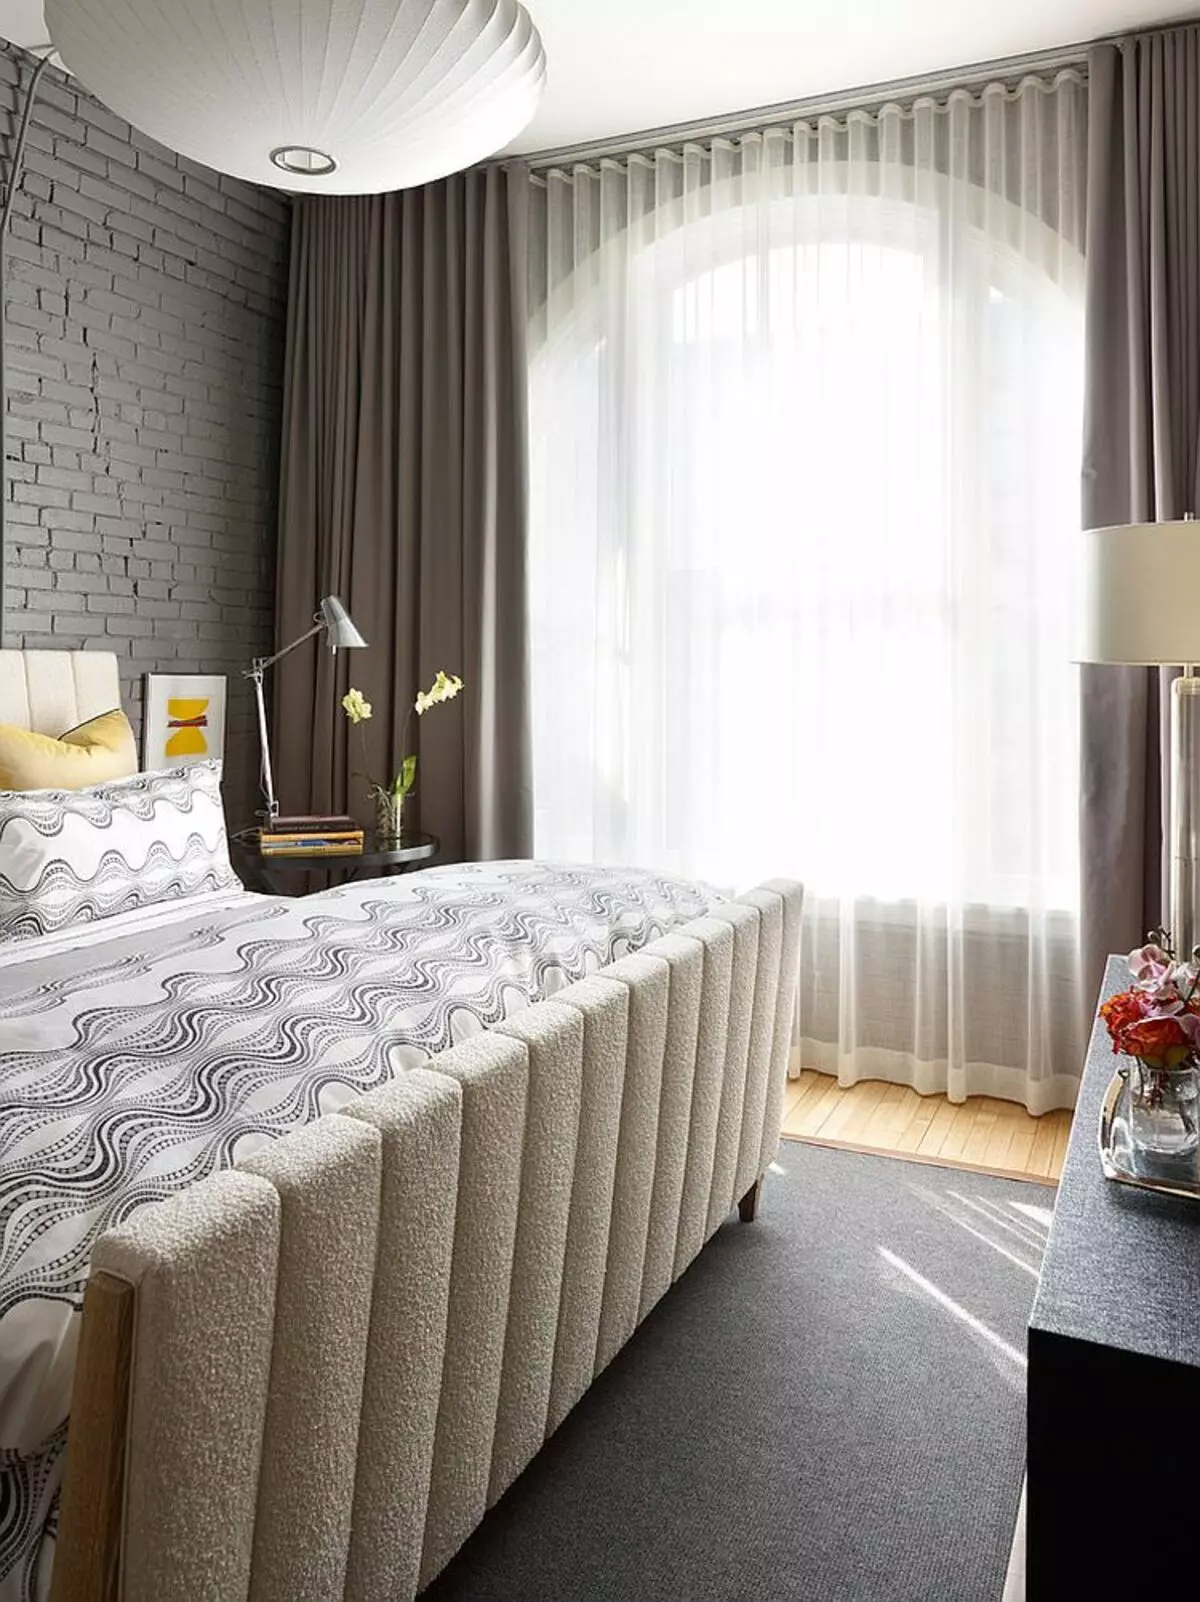 ベッドルームのデザイン（183枚の写真）：アパートでベッドルームのインテリアデザインのアイデア、シックな排他的なデザインプロジェクト。テキスタイルや珍しいアクセサリー付きベッドルームを飾るためにどのように？ 190_156